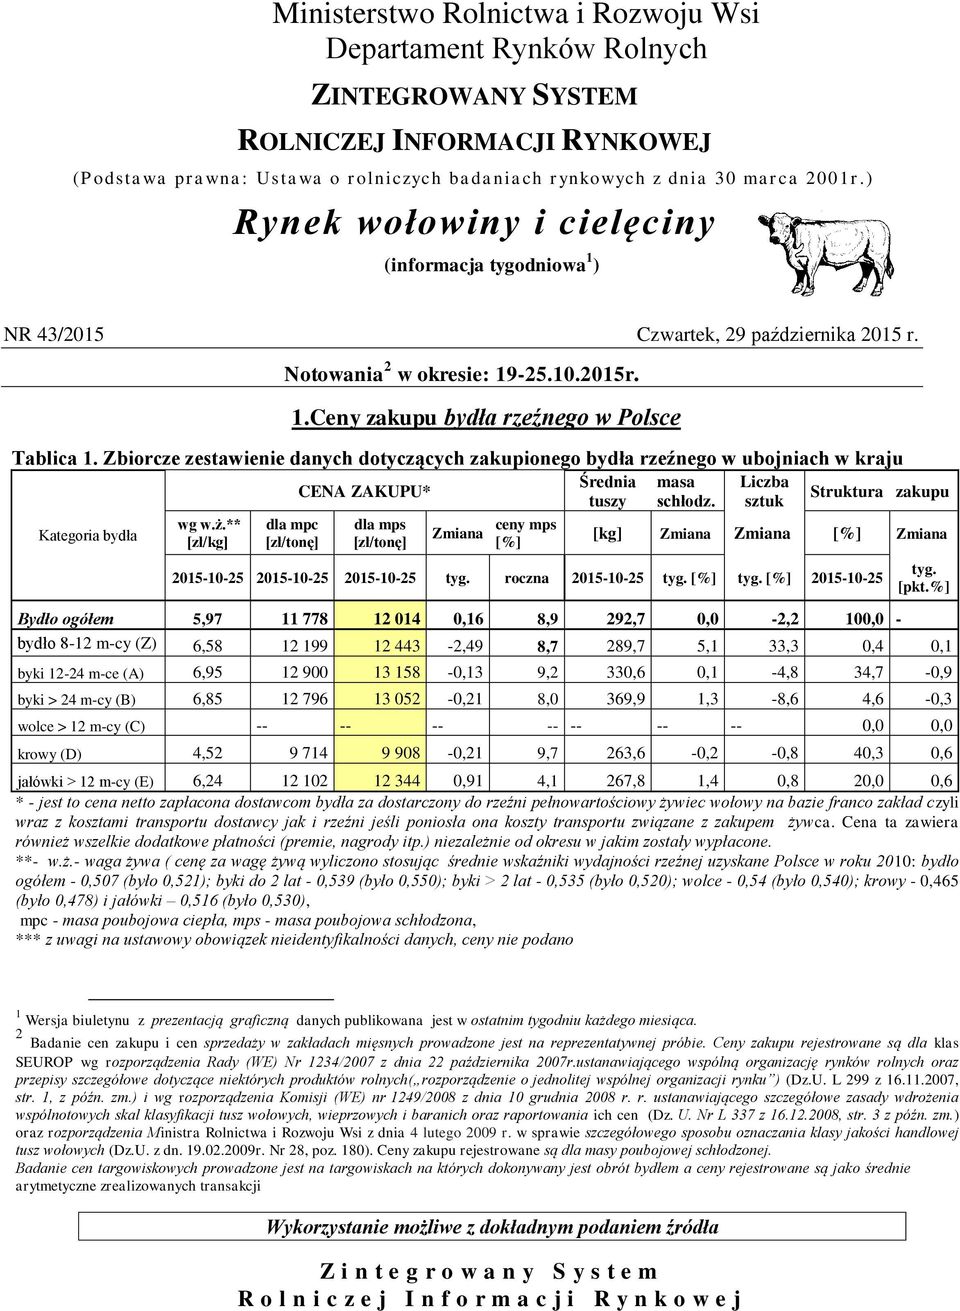 Zbiorcze zestawienie danych dotyczących zakupionego bydła rzeźnego w ubojniach w kraju wg w.ż.** [zł/kg] dla mpc CENA ZAKUPU* dla mps ceny mps Średnia tuszy masa schłodz.